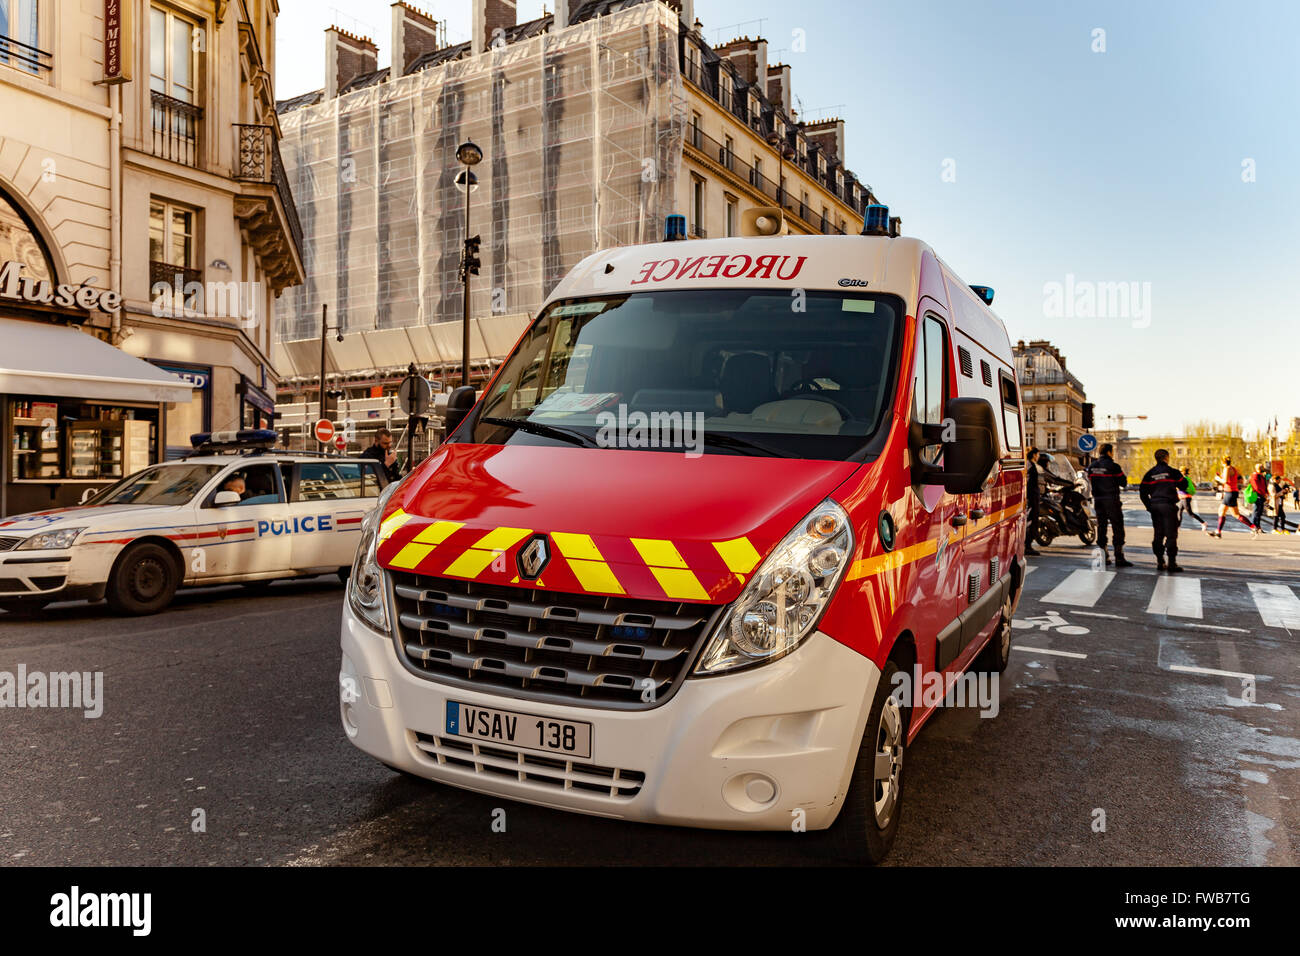 Paris, France. 3 avril, 2016. Les véhicules d'urgence près des gens courir pendant l'événement Marathon de Paris 2016. Crédit : Guillaume Louyot/Alamy Live News Banque D'Images